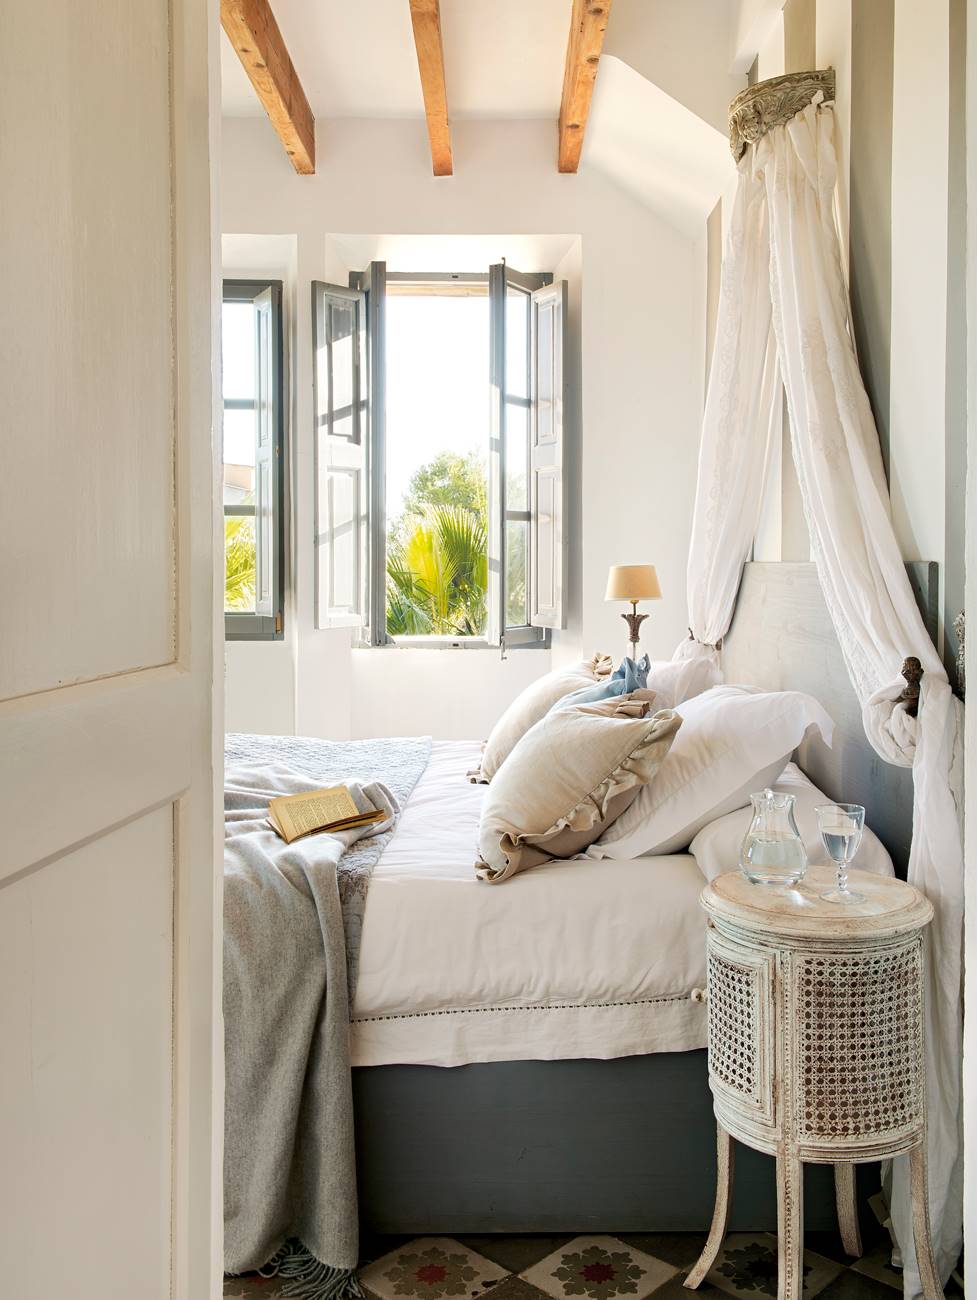 Dormitorio con mesilla de noche de mimbre, vigas de madera, ventana con porticones de color azul y mosquitera (00378440-Mesillas)